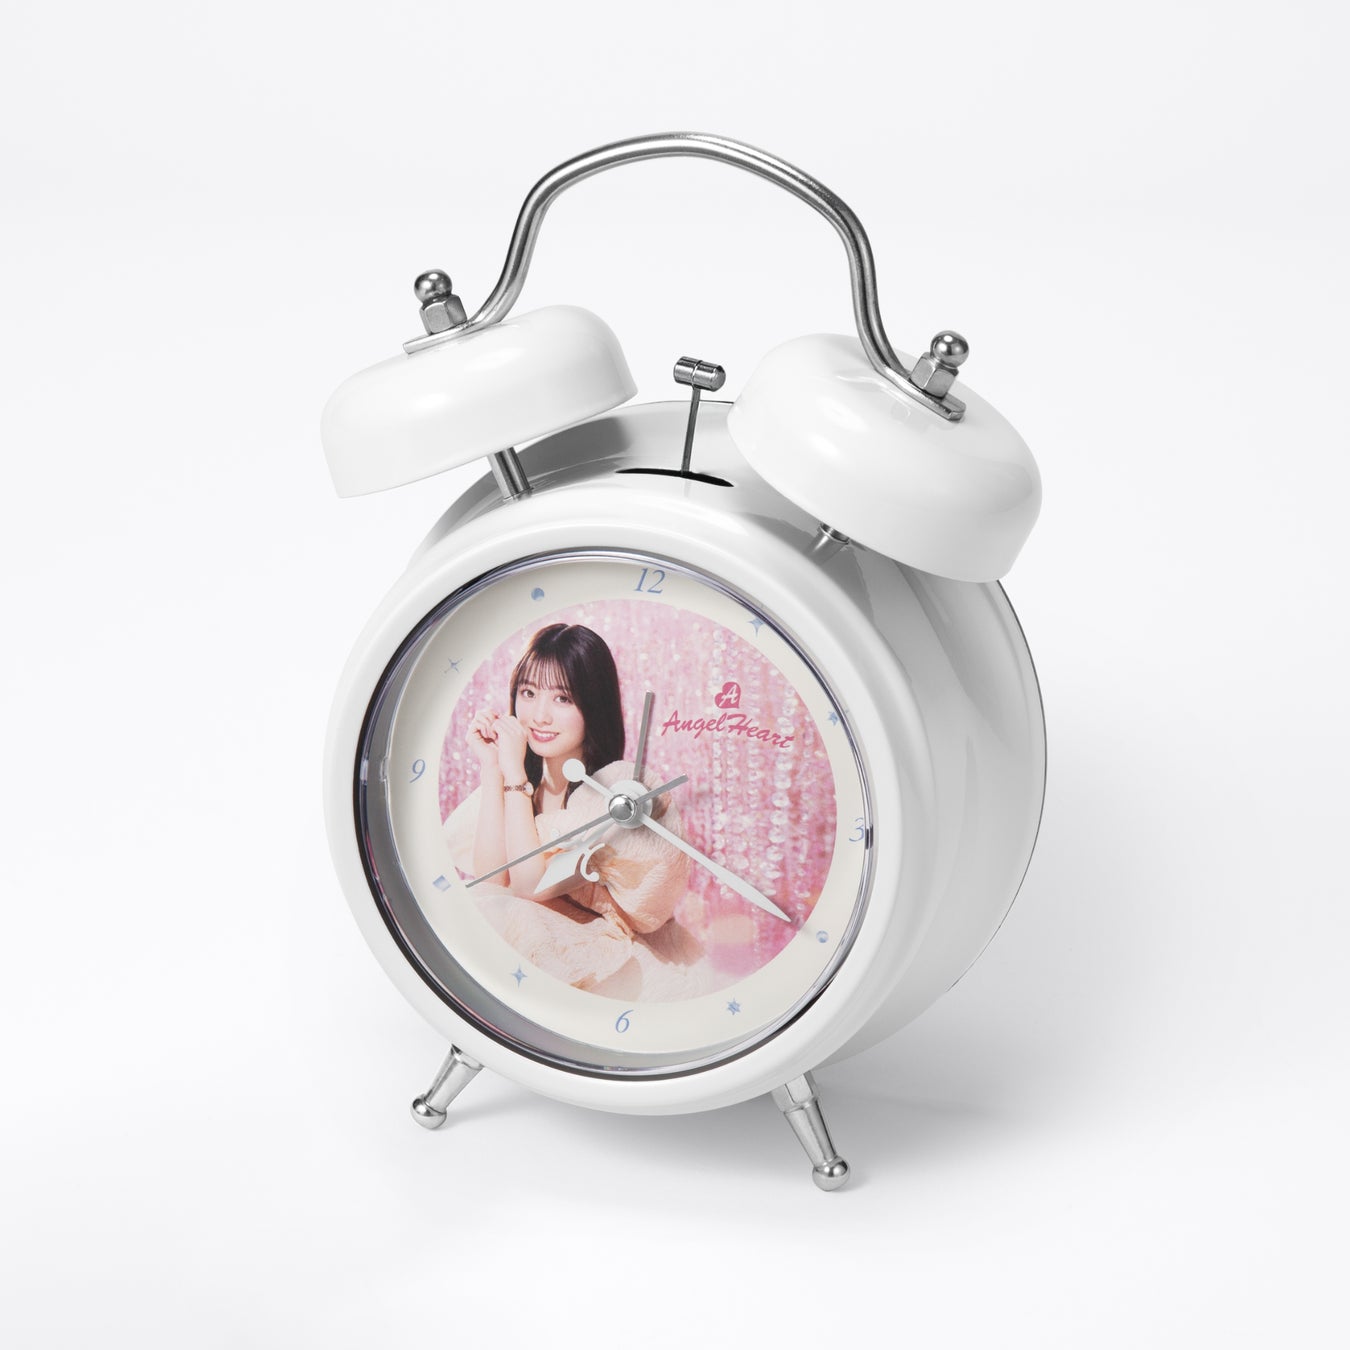 時計ブランドAngel Heartは第二弾となるブランドミューズ橋本環奈さんのオリジナルボイス入り目覚まし時計を8月10日(木)より全国の時計店と公式オンラインショップにてご予約開始いたします。のサブ画像2